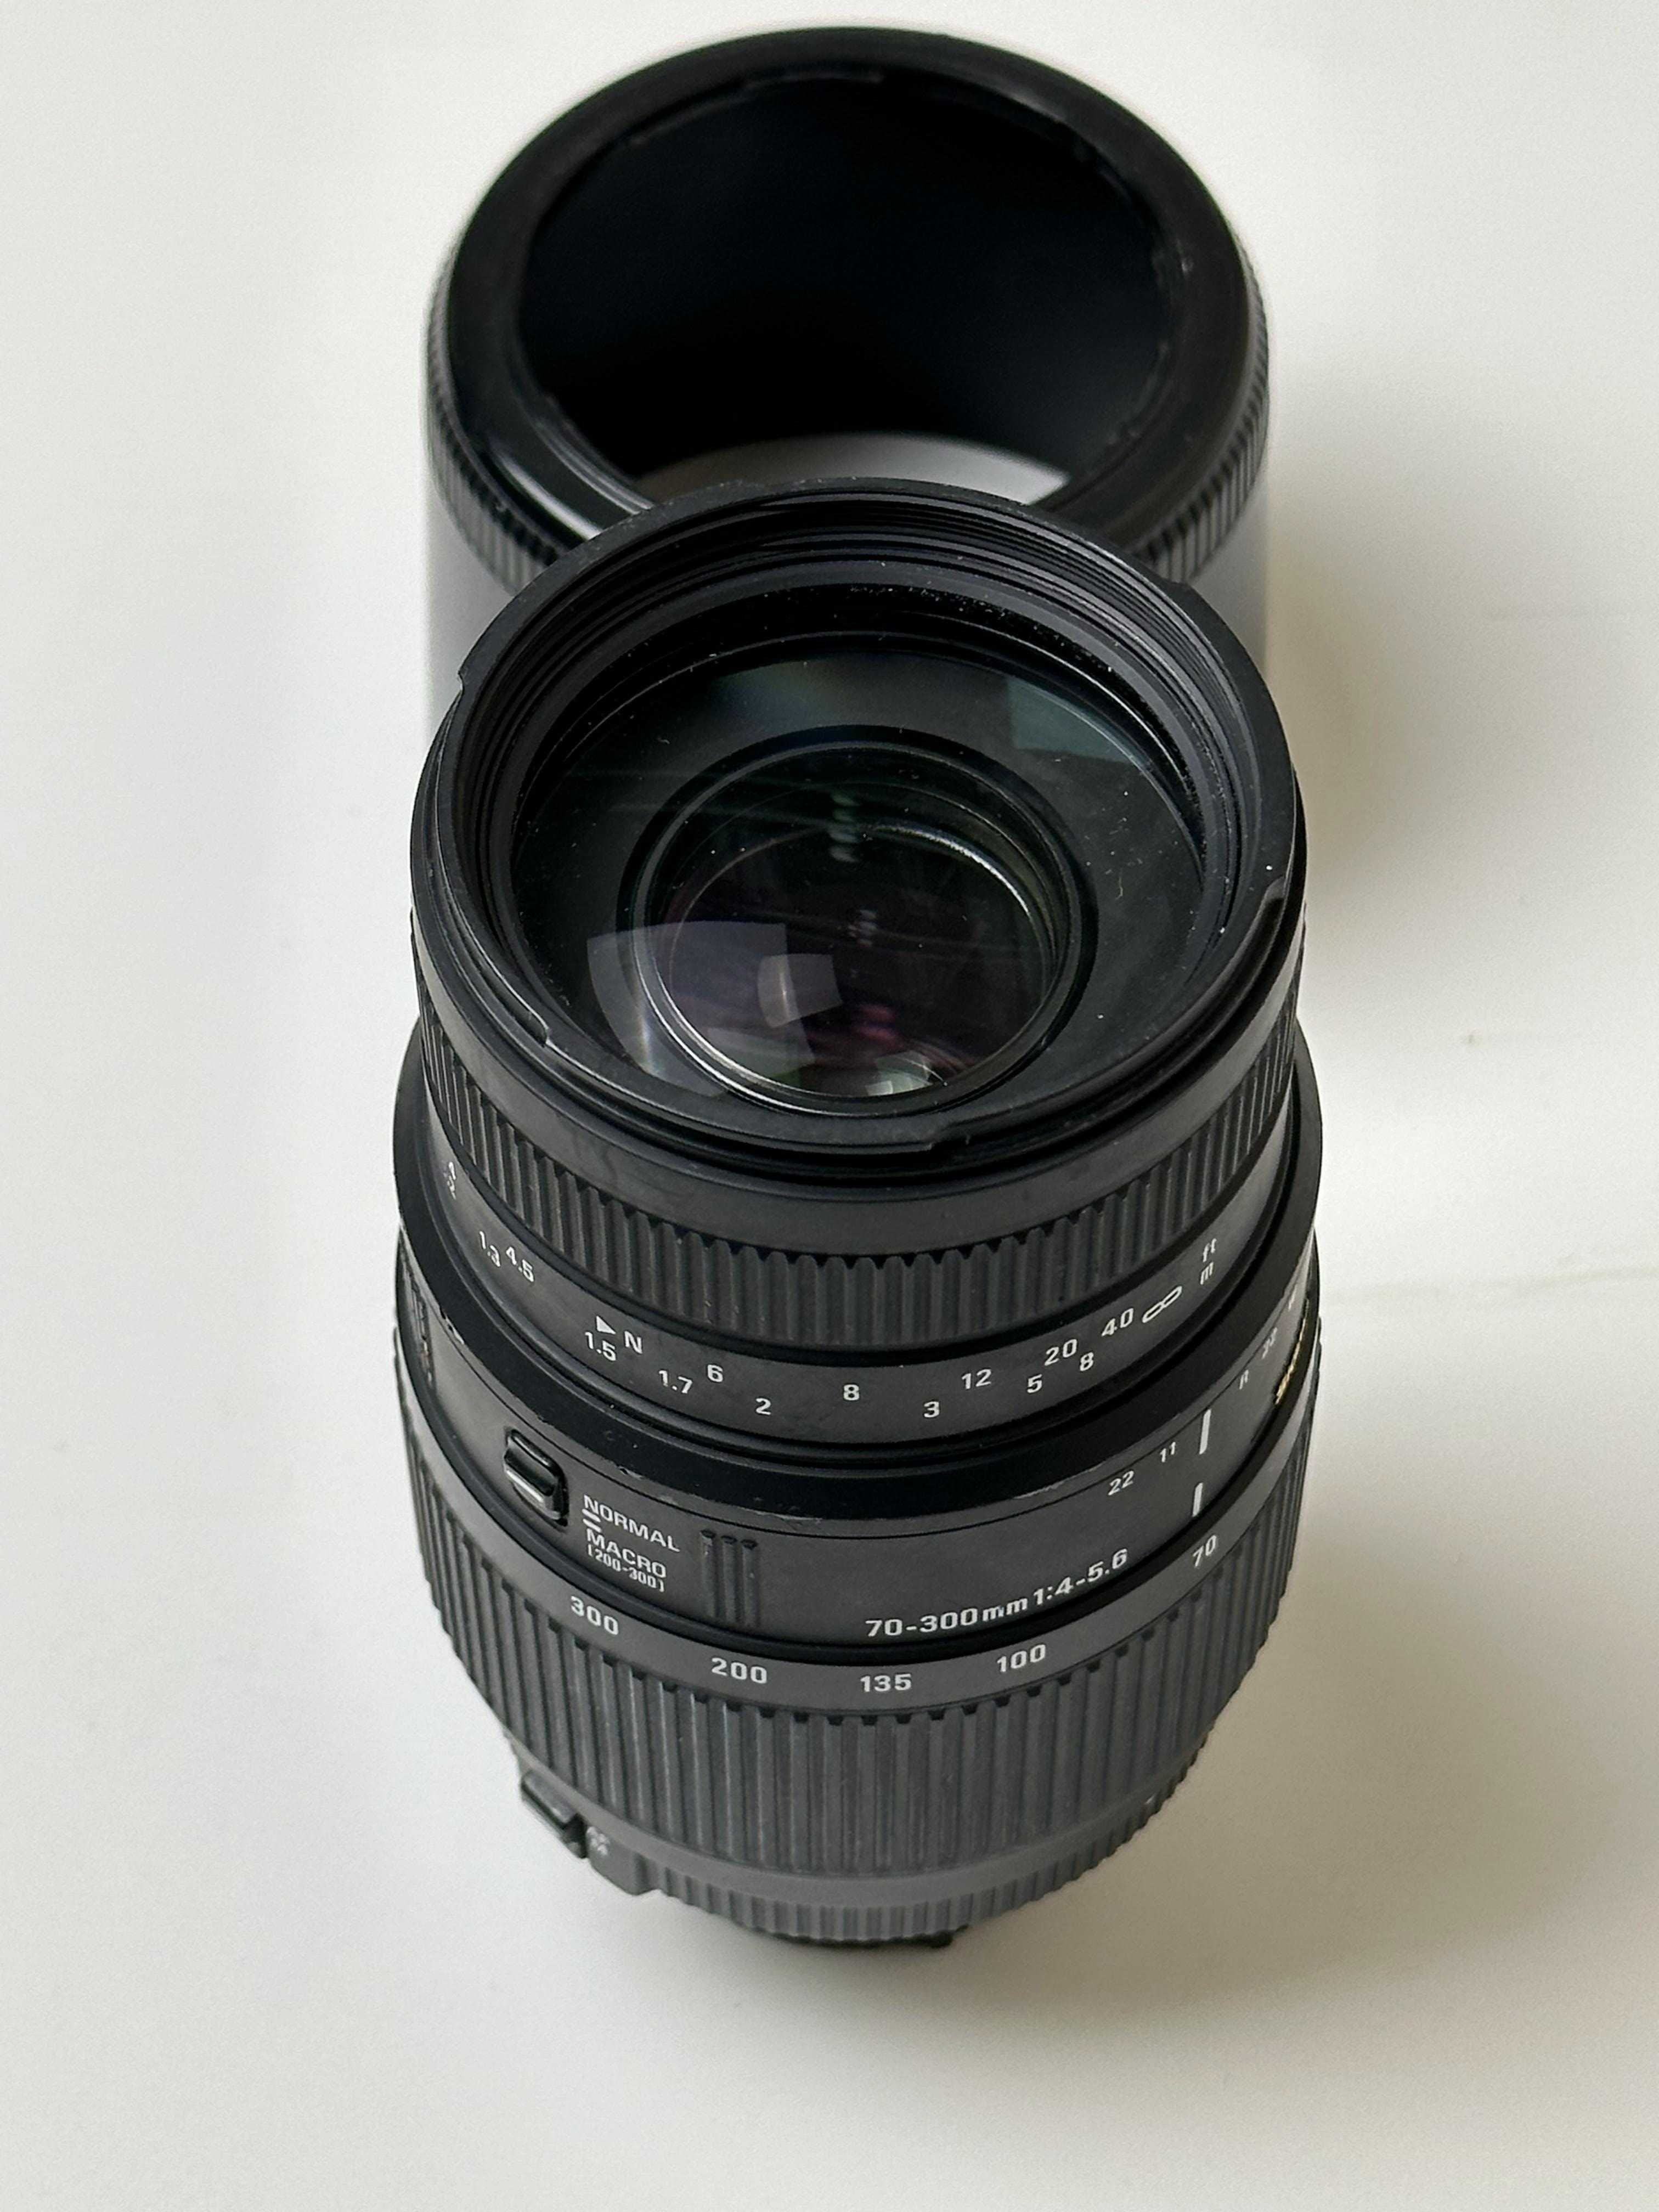 Sigma 70-300mm F4-5.6 DG for Nikon  (full frame)